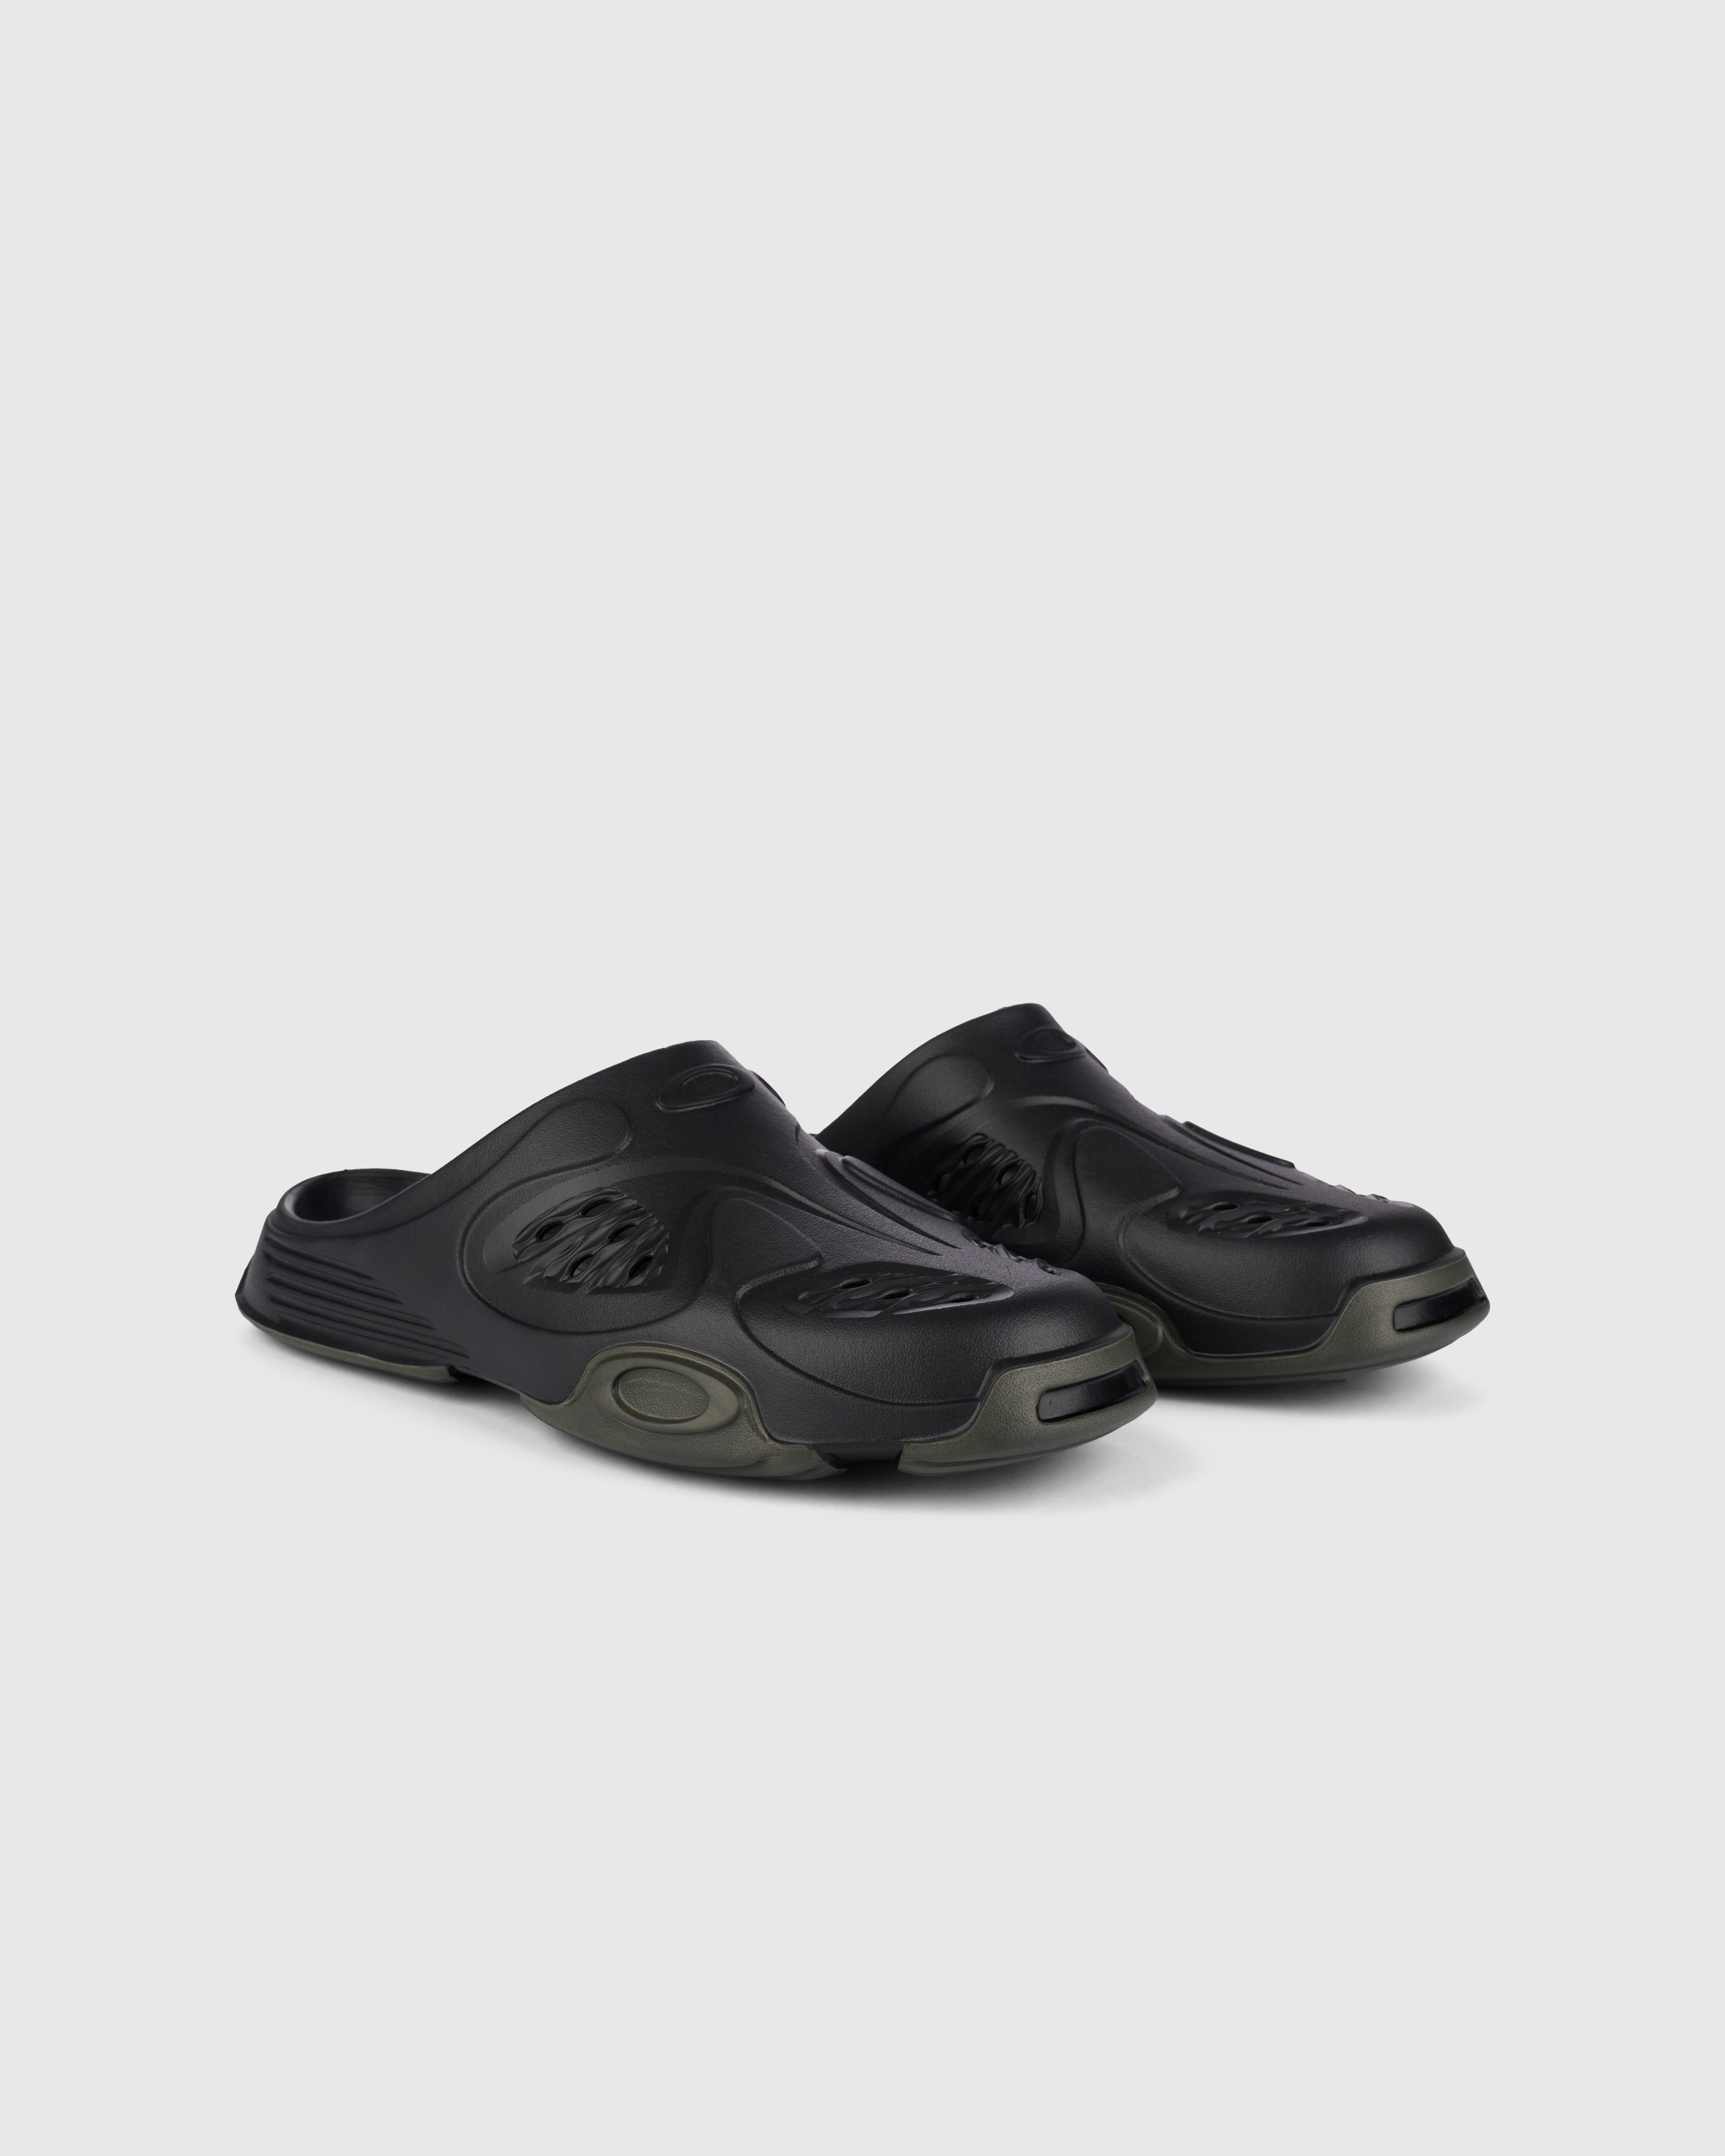 Oakley Factory Team - Paguro Slide Black/Ink - Footwear - Black - Image 2